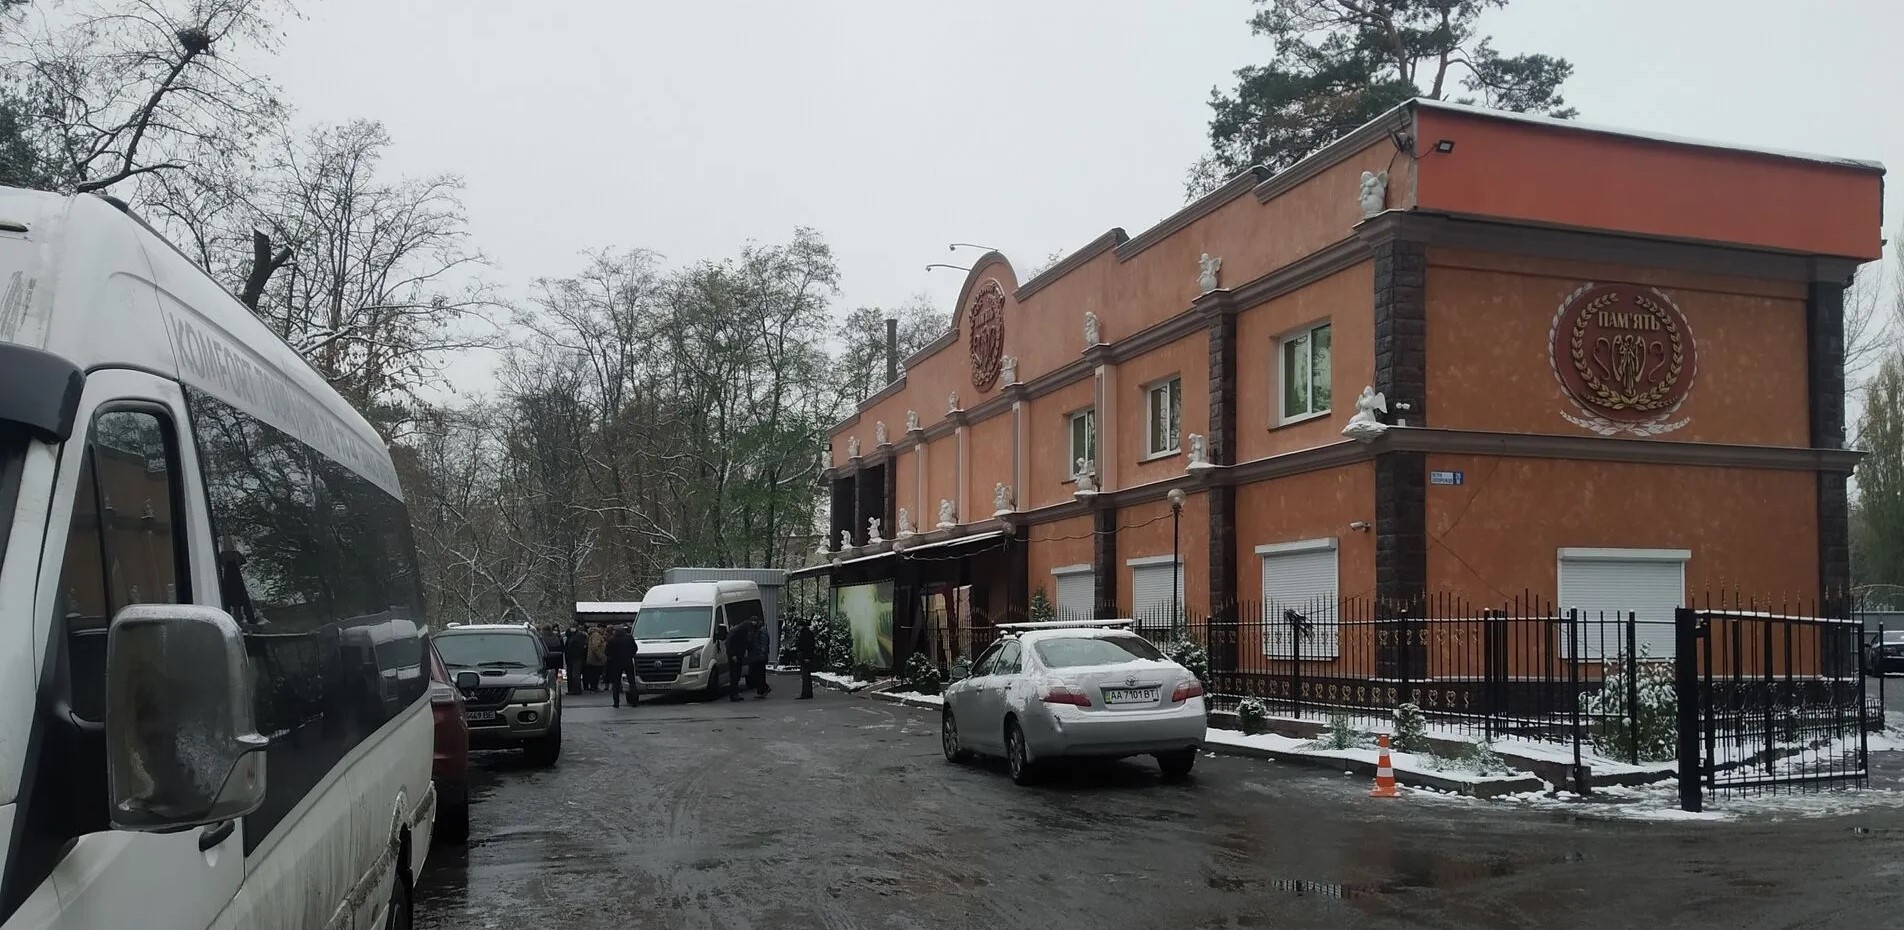 Катафалки массово вывозят умерших от COVID-19 из киевского морга — СМИ